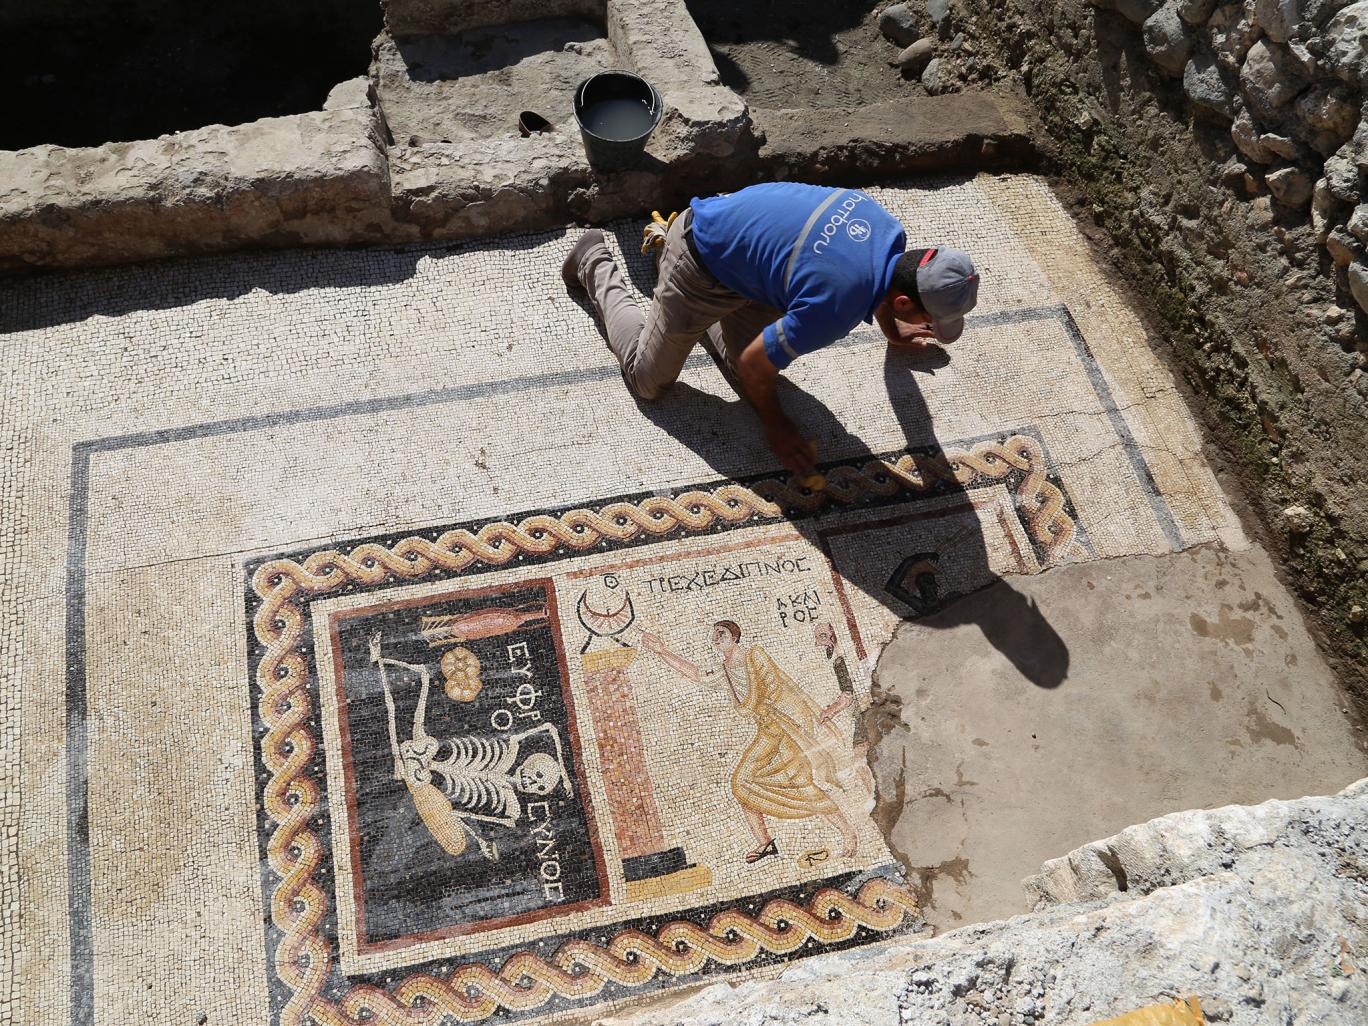 Σπάνιο αρχαιοελληνικό ψηφιδωτό βρέθηκε στην Τουρκία – ΦΩΤΟ